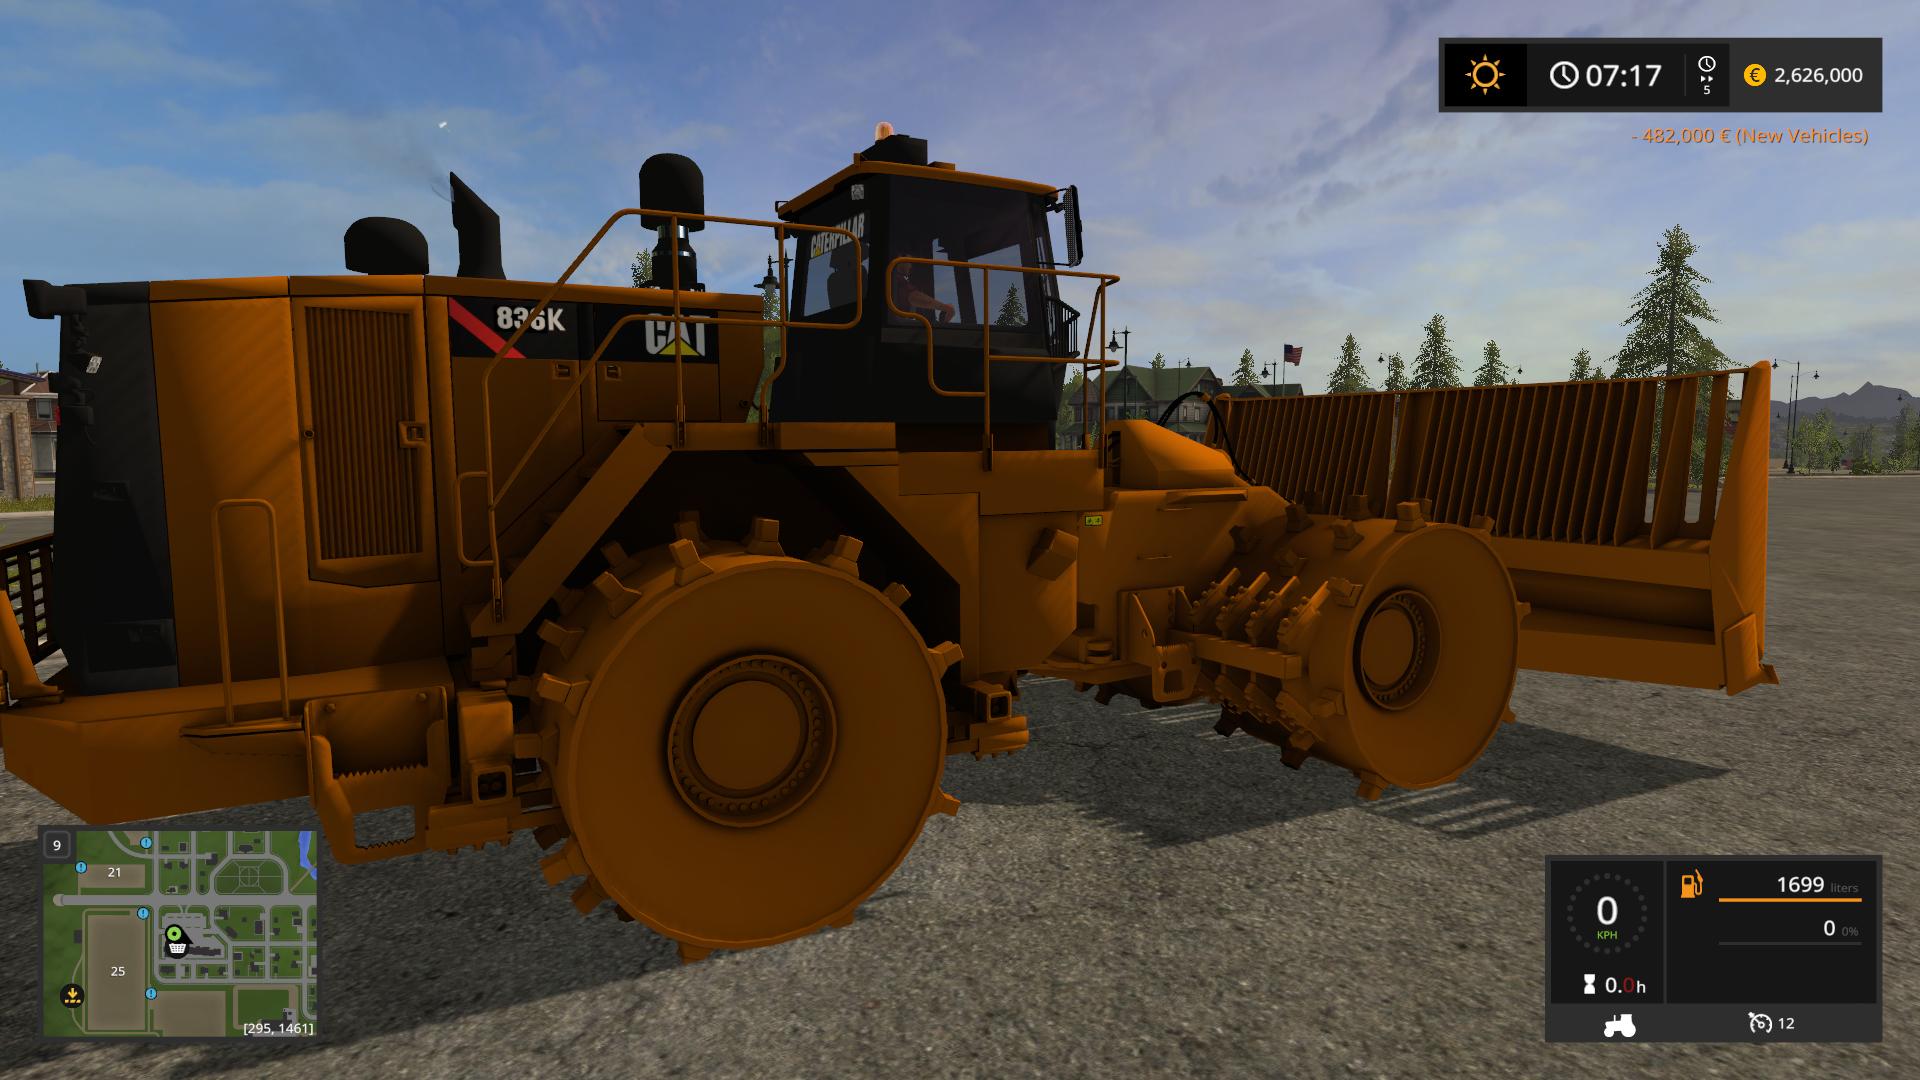 Caterpillar 836k V100 Ls17 Farming Simulator 2022 Mod Ls 2022 Mod Fs 22 Mod 9263